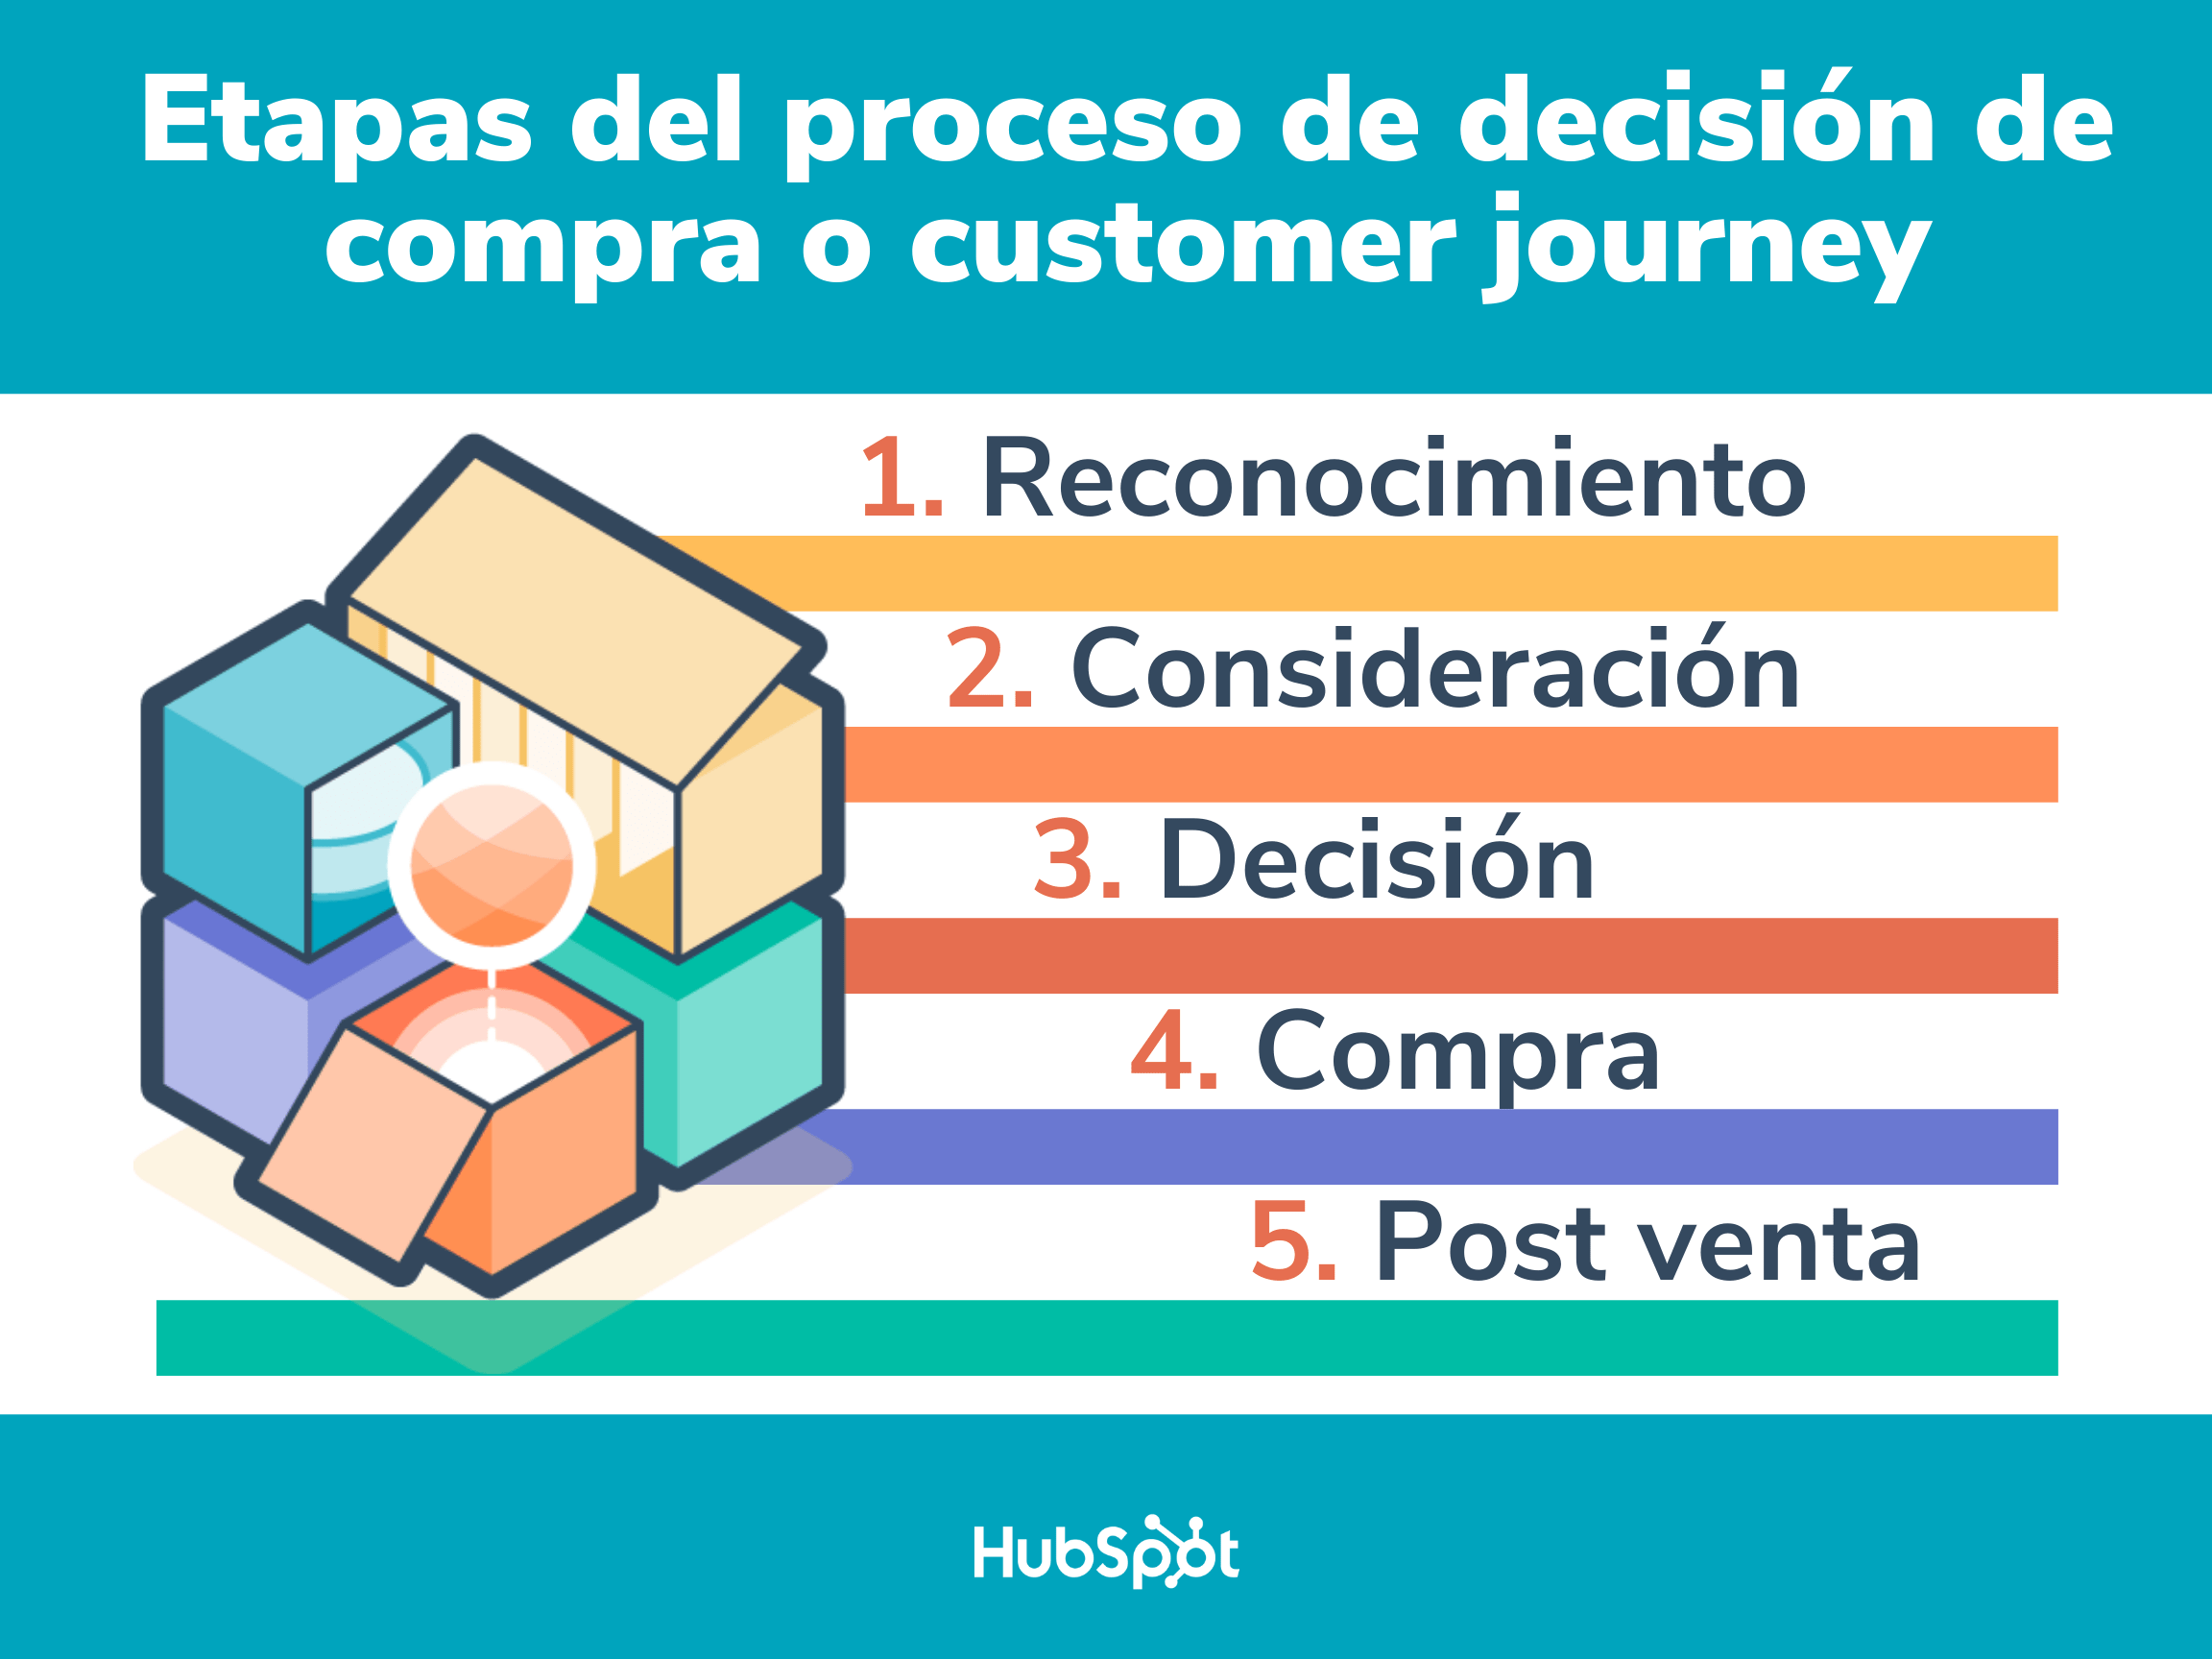 Customer Journey Las 5 Etapas Del Proceso De Decisión De Compra 9790